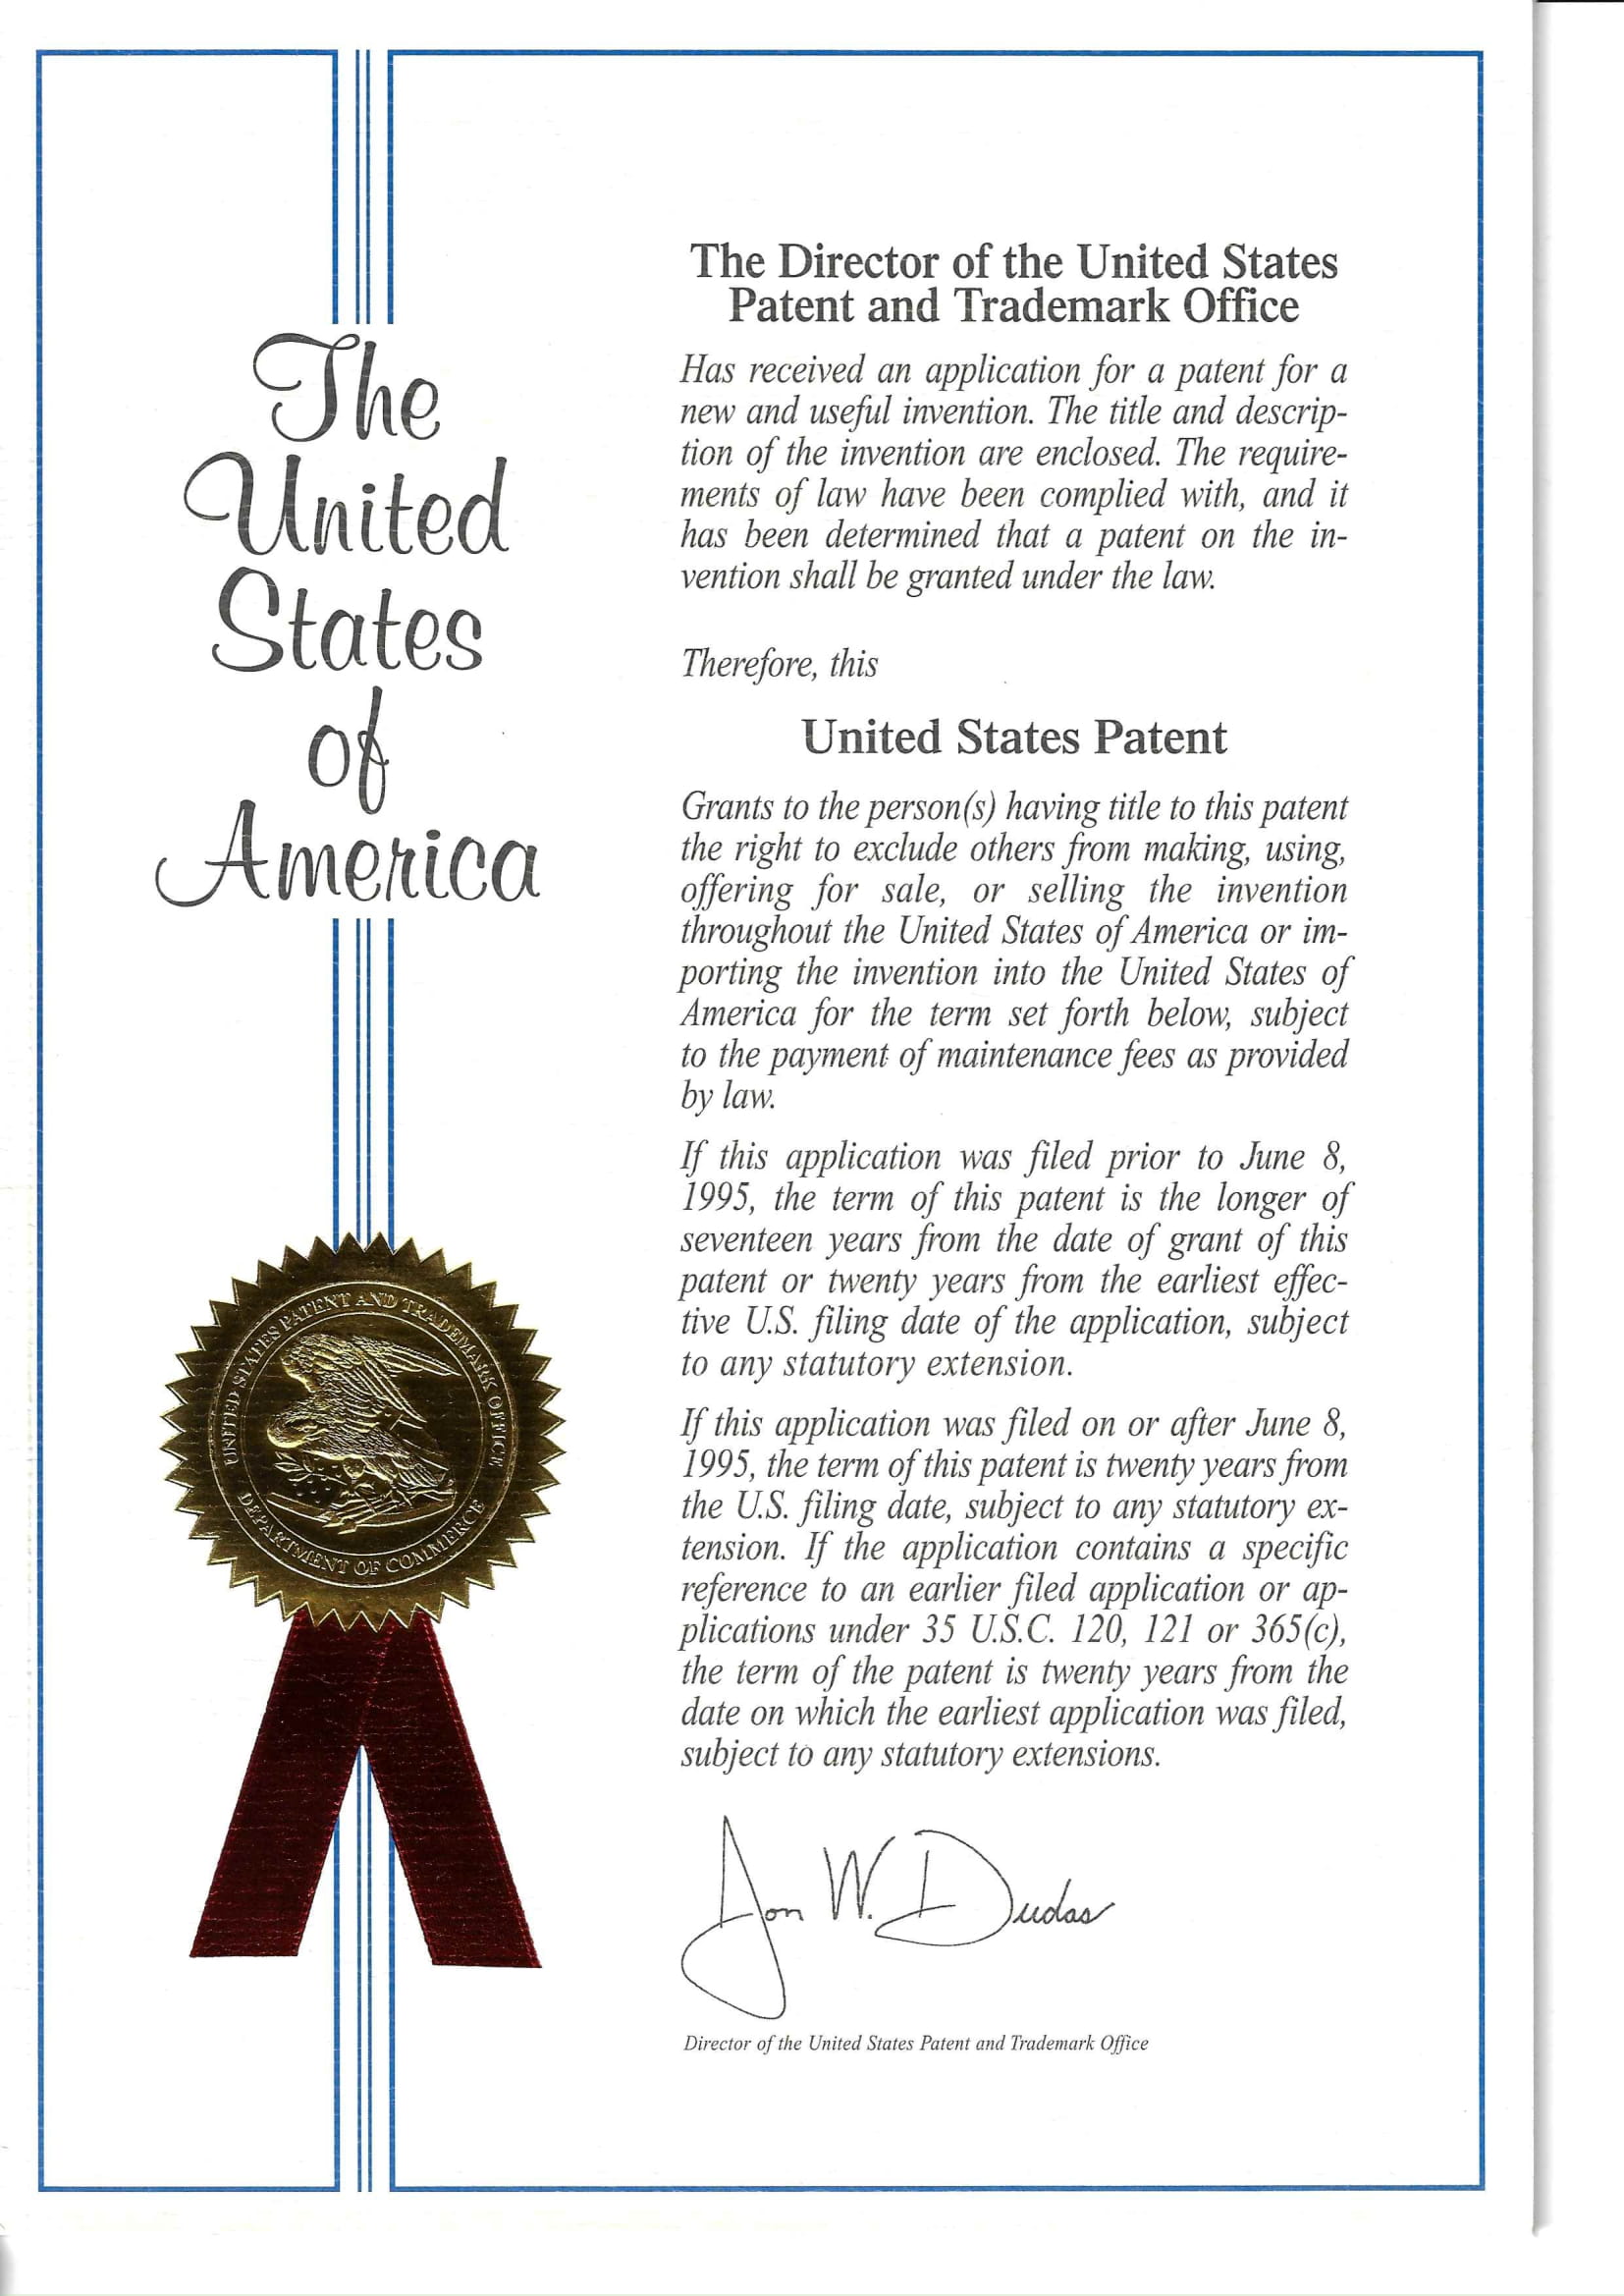 인터넷 상의 특정 웹사이트 접속시간 측정방법 및 프로그램이 기록된 기록매체 미국특허